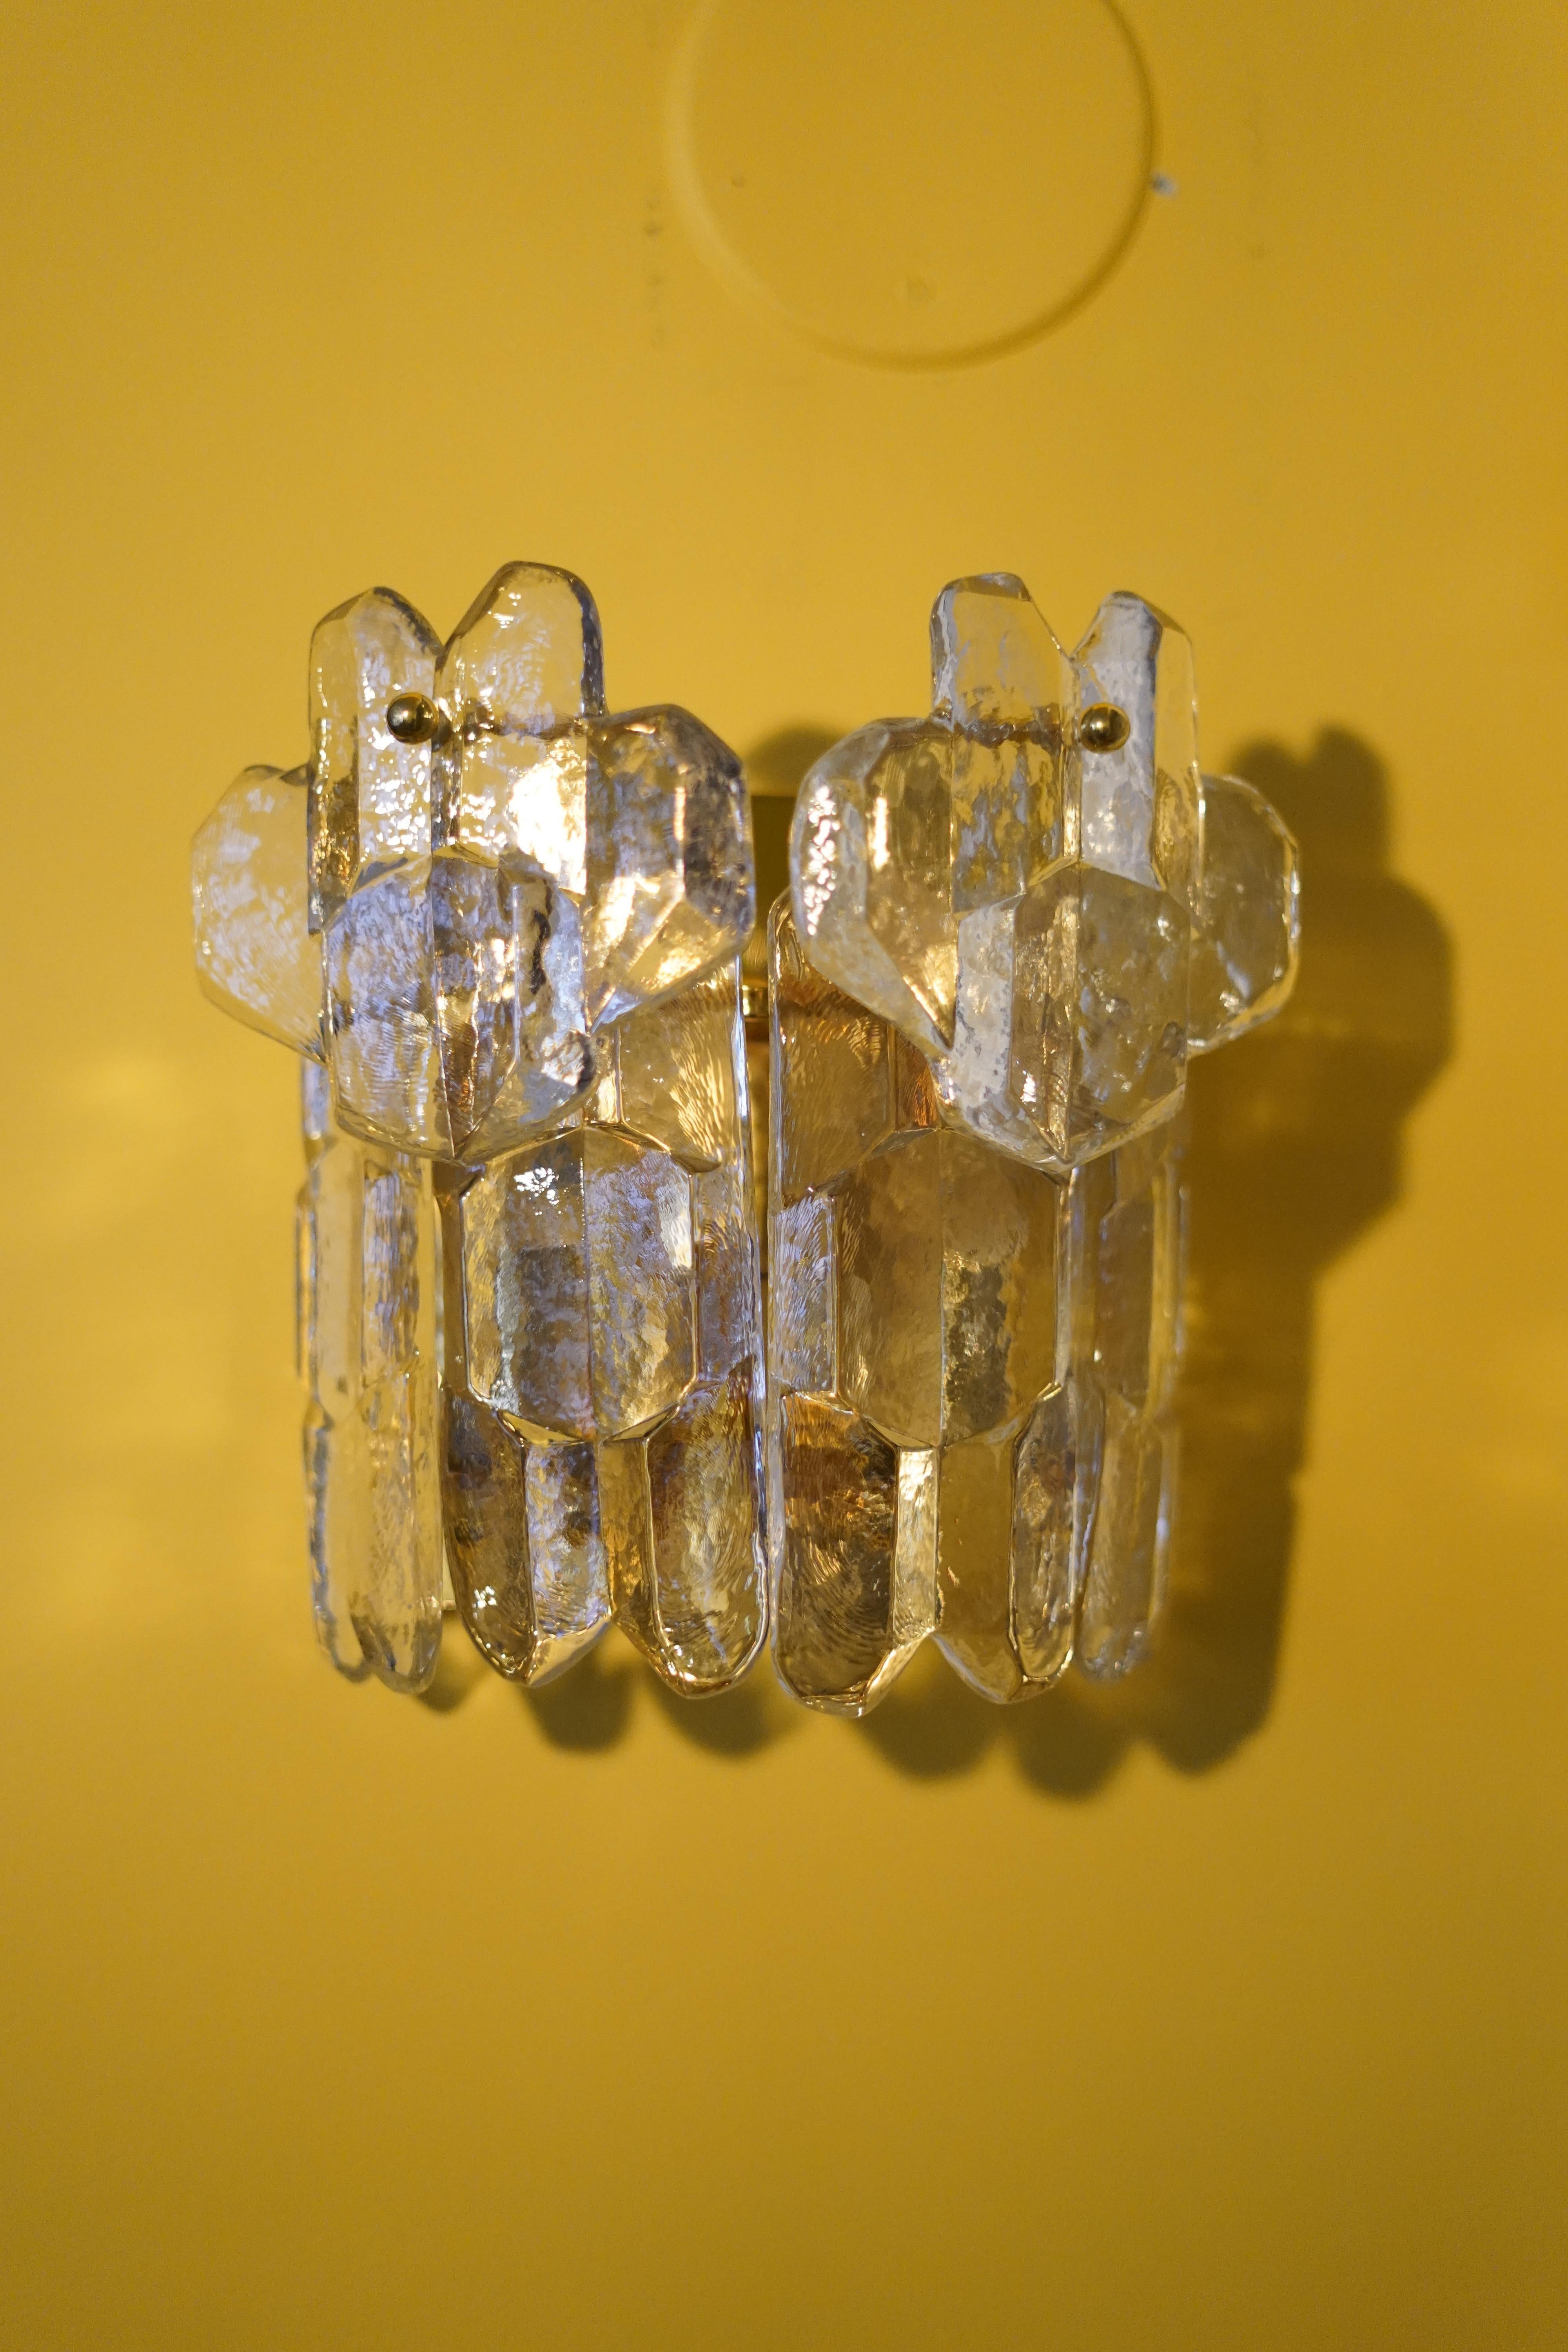 Paire d'appliques en cristal Kalmar palazzo 1970 Vienne Autriche, quatre pièces épaisses, claires et allongées de cristal pressé de la plus haute qualité montées sur un cadre doré avec deux pièces supérieures simples montées au-dessus de la rangée